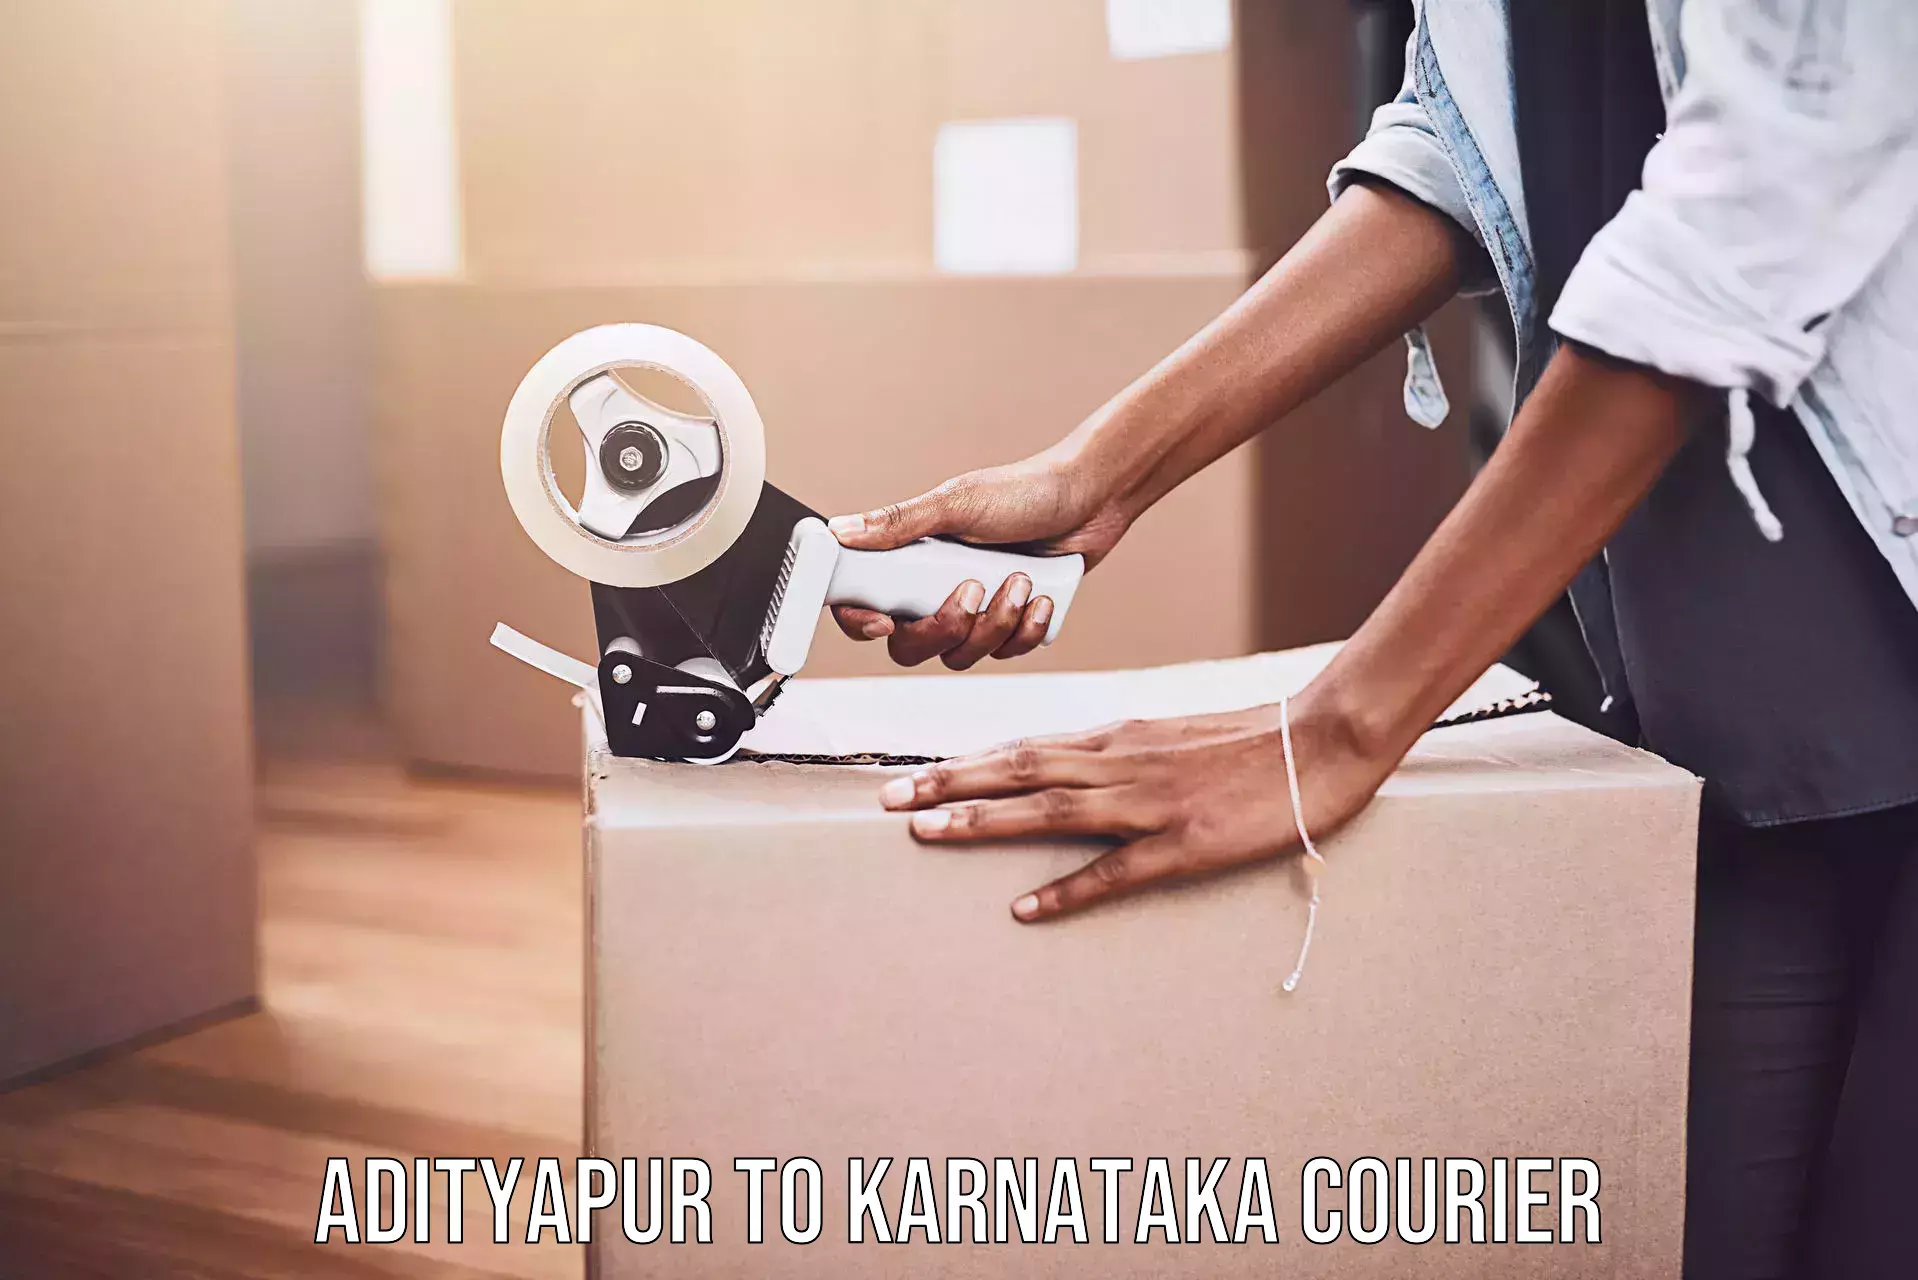 Versatile courier offerings Adityapur to Kollegal